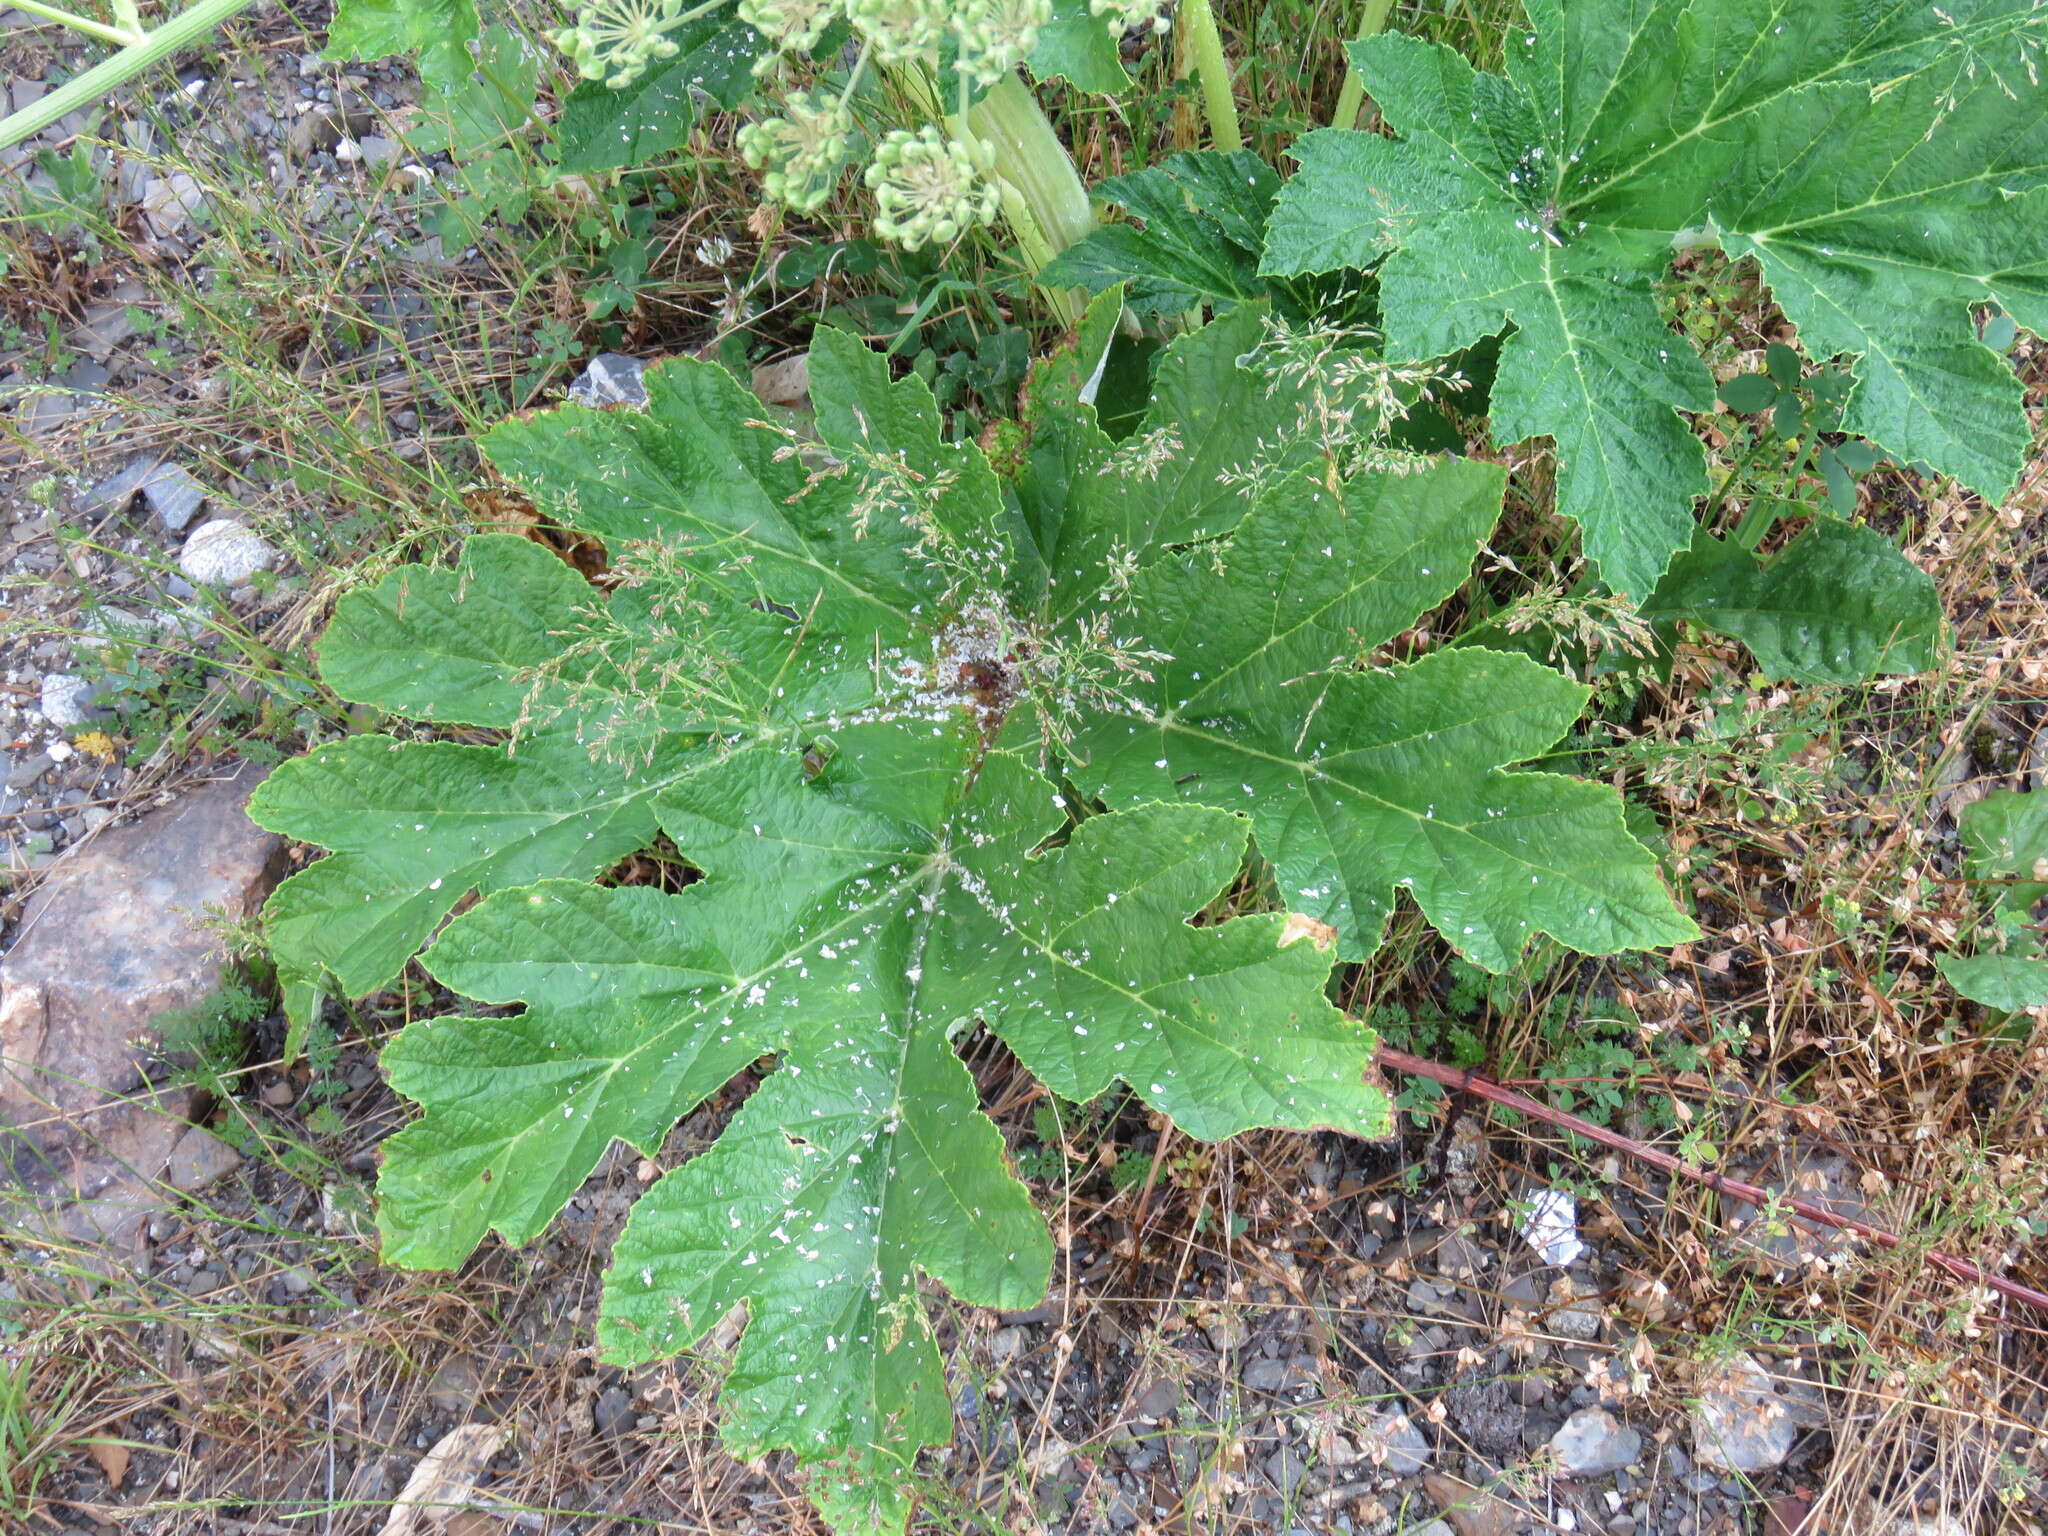 Image of Heracleum sphondylium subsp. pyrenaicum (Lam.) Bonnier & Layens